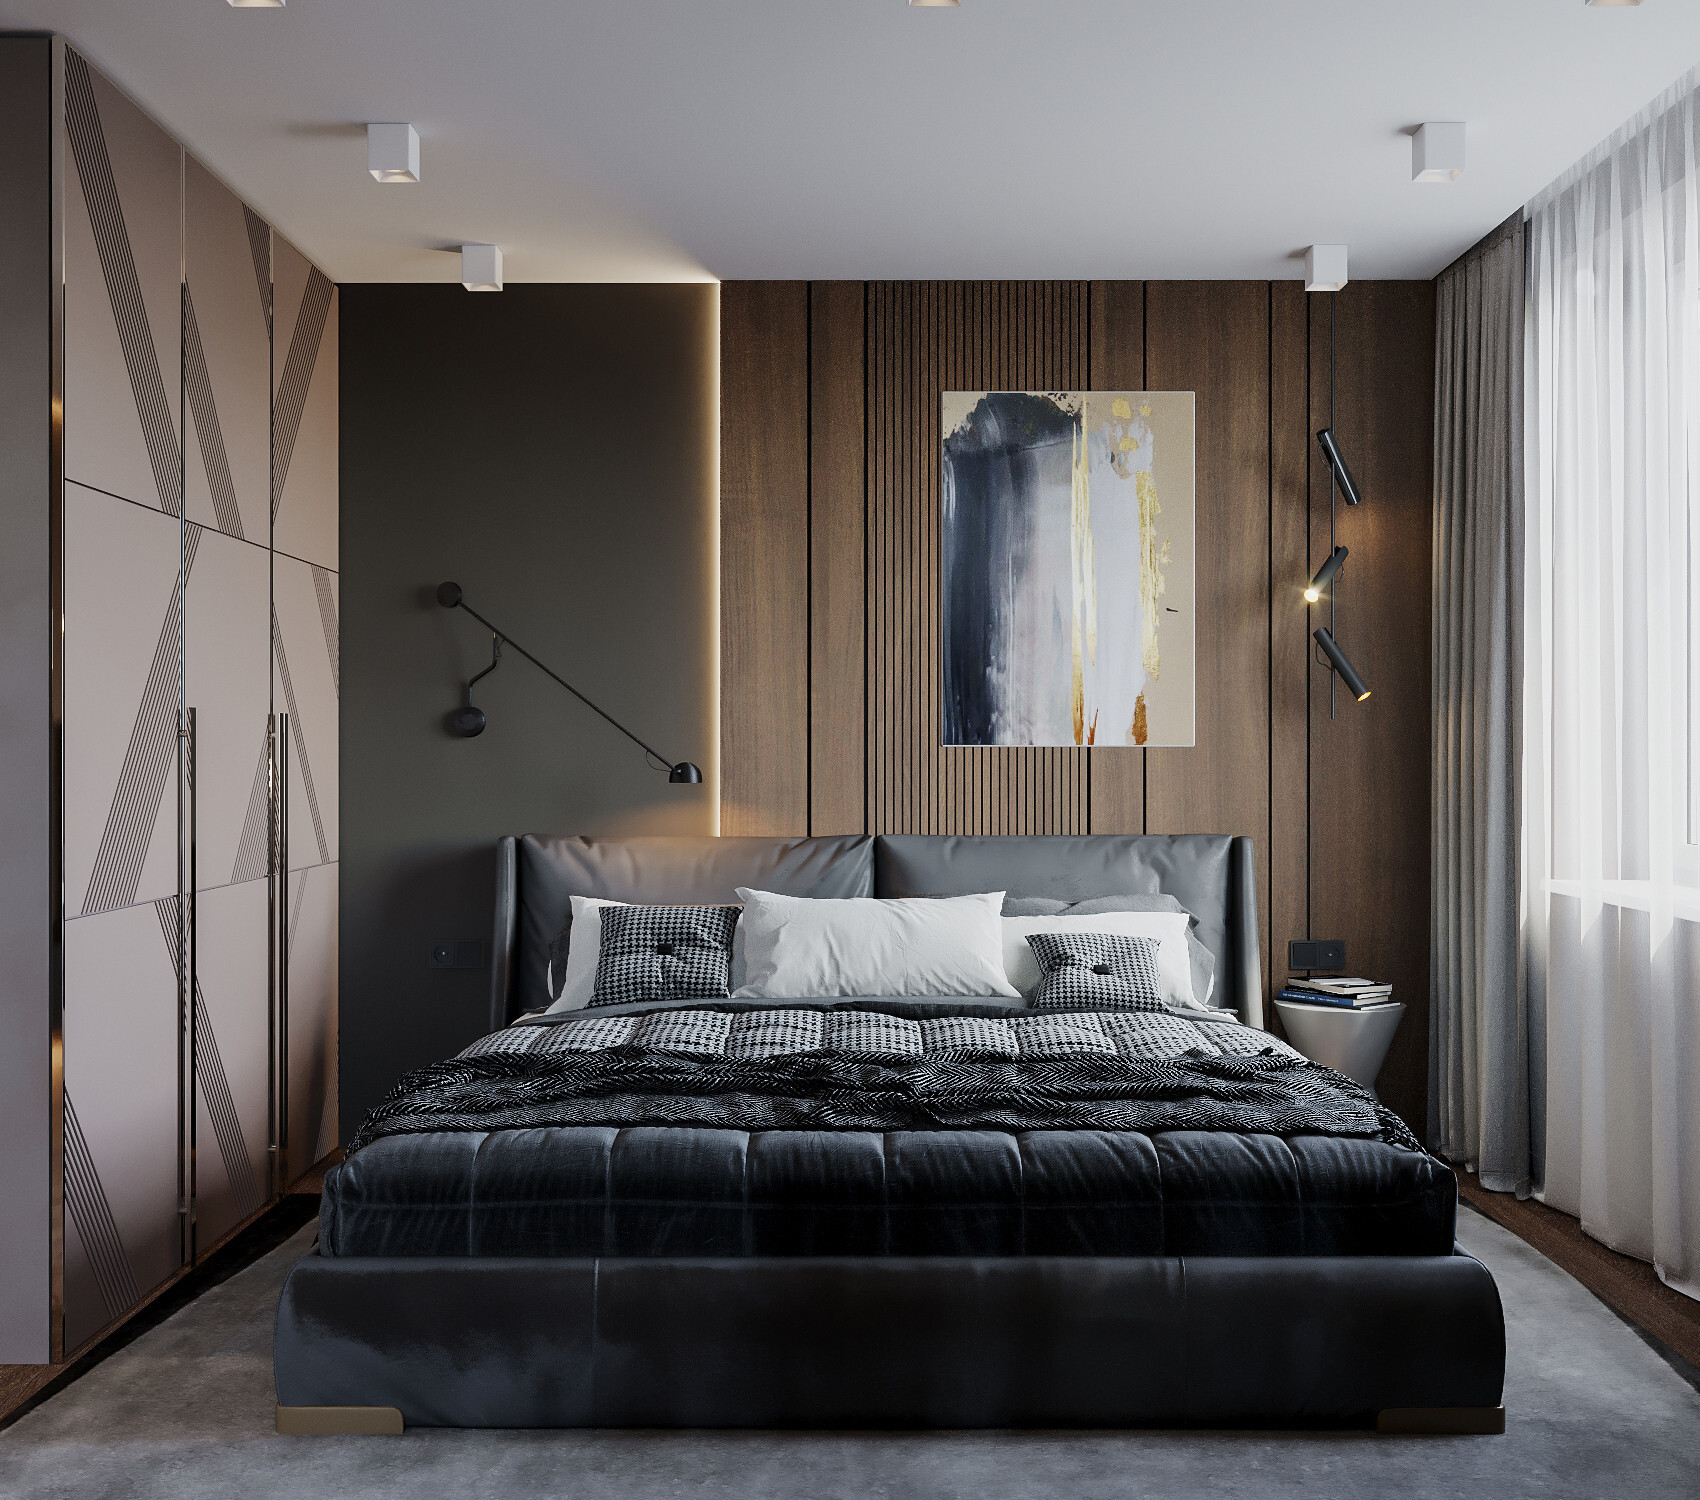 Интерьер спальни с бра над кроватью, подсветкой настенной и светильниками над кроватью в современном стиле и в стиле лофт